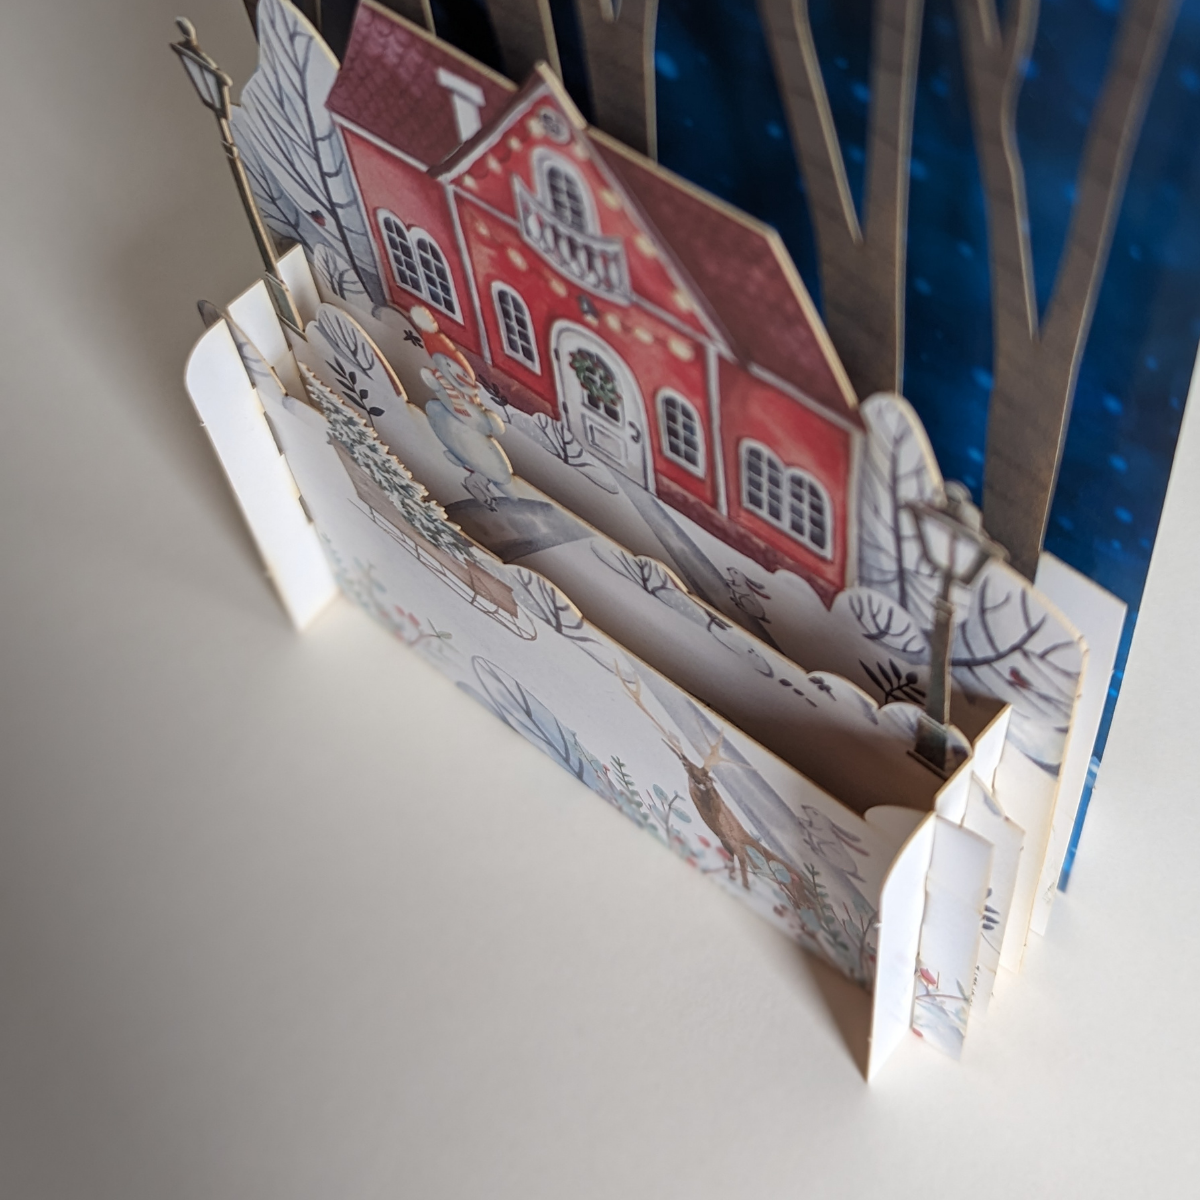 Cette carte en 3D pop-up présente une scène hivernale avec une charmante maison nichée au cœur d'une forêt enneigée. 